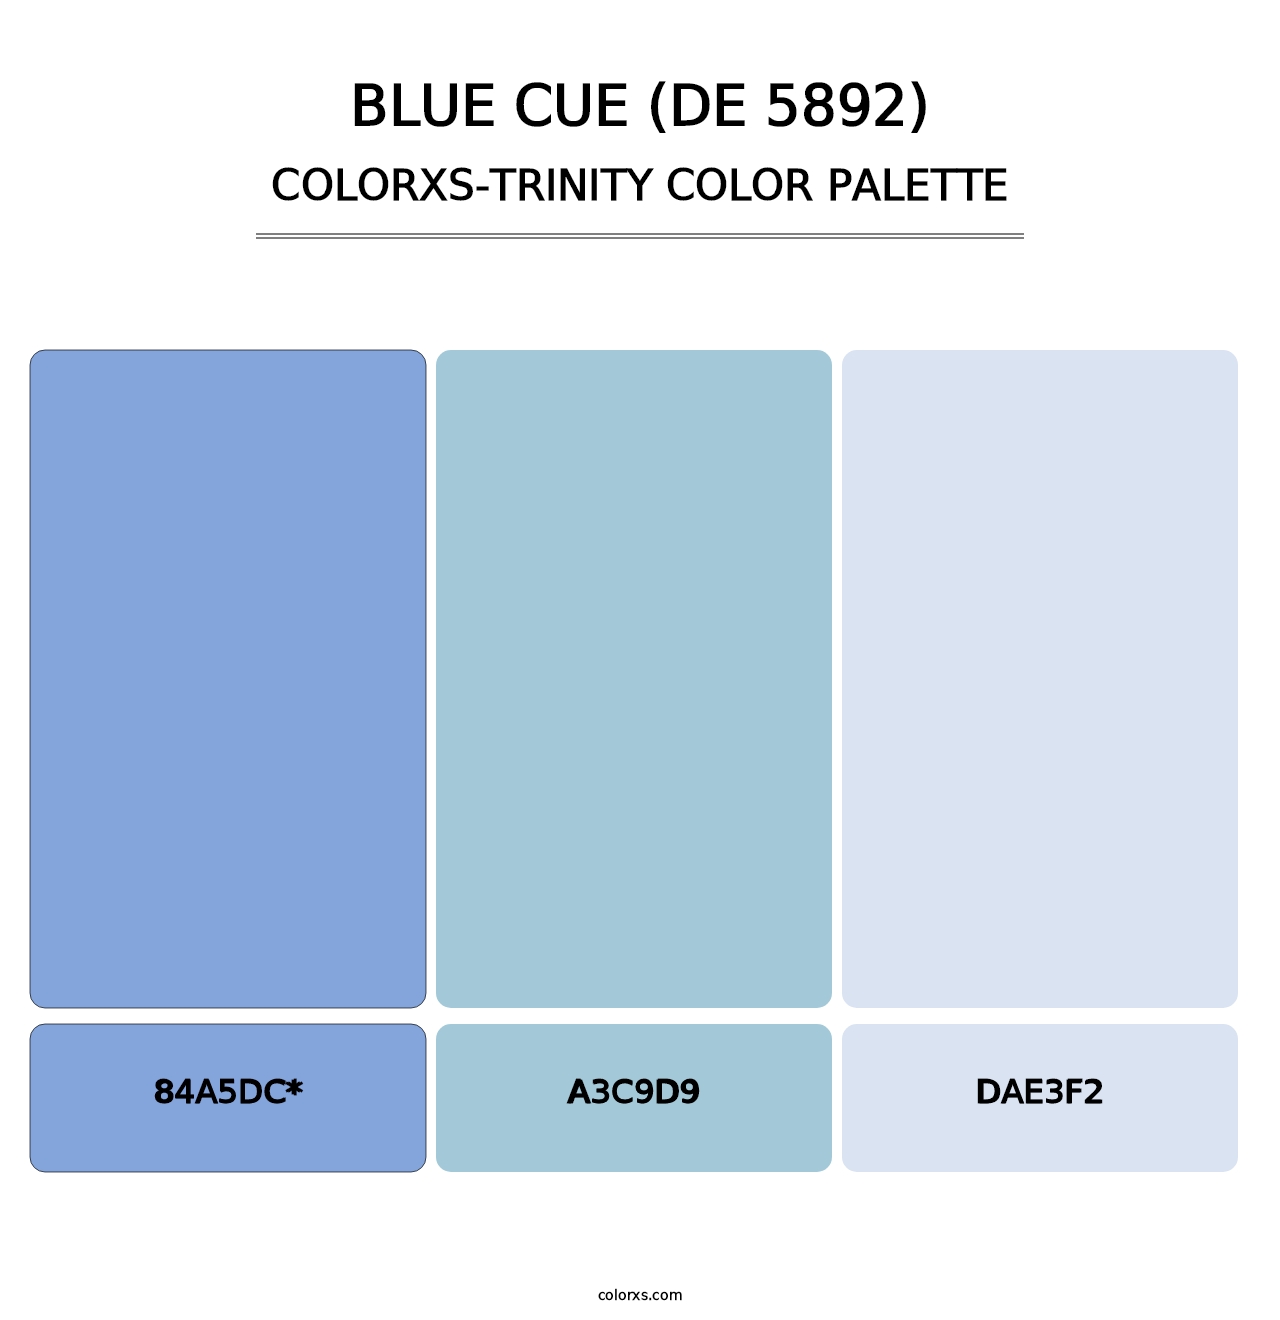 Blue Cue (DE 5892) - Colorxs Trinity Palette